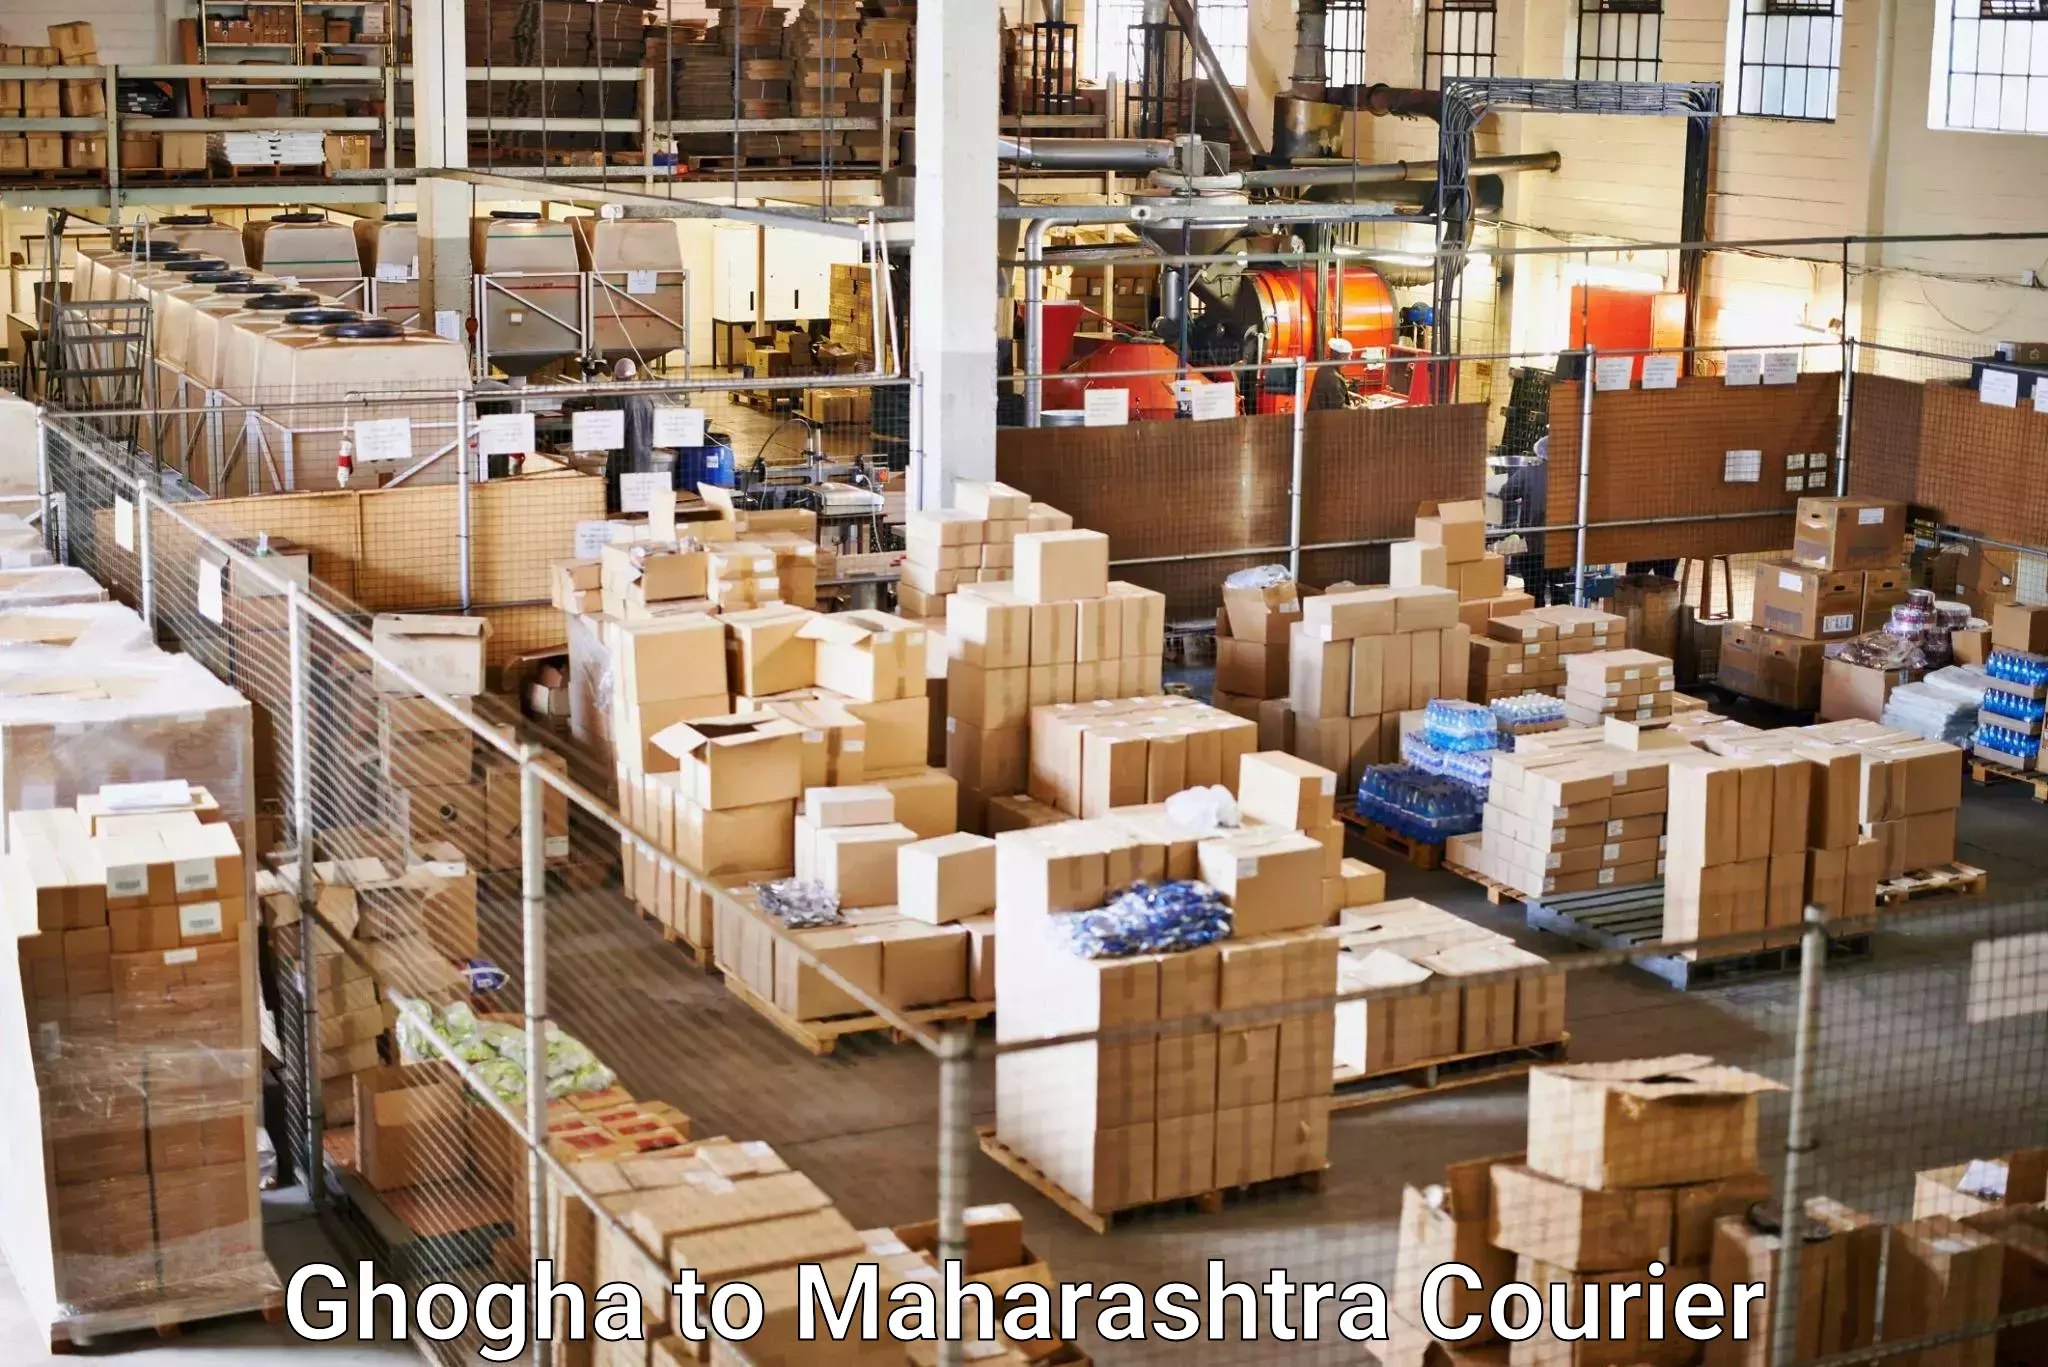 Digital courier platforms Ghogha to Maharashtra